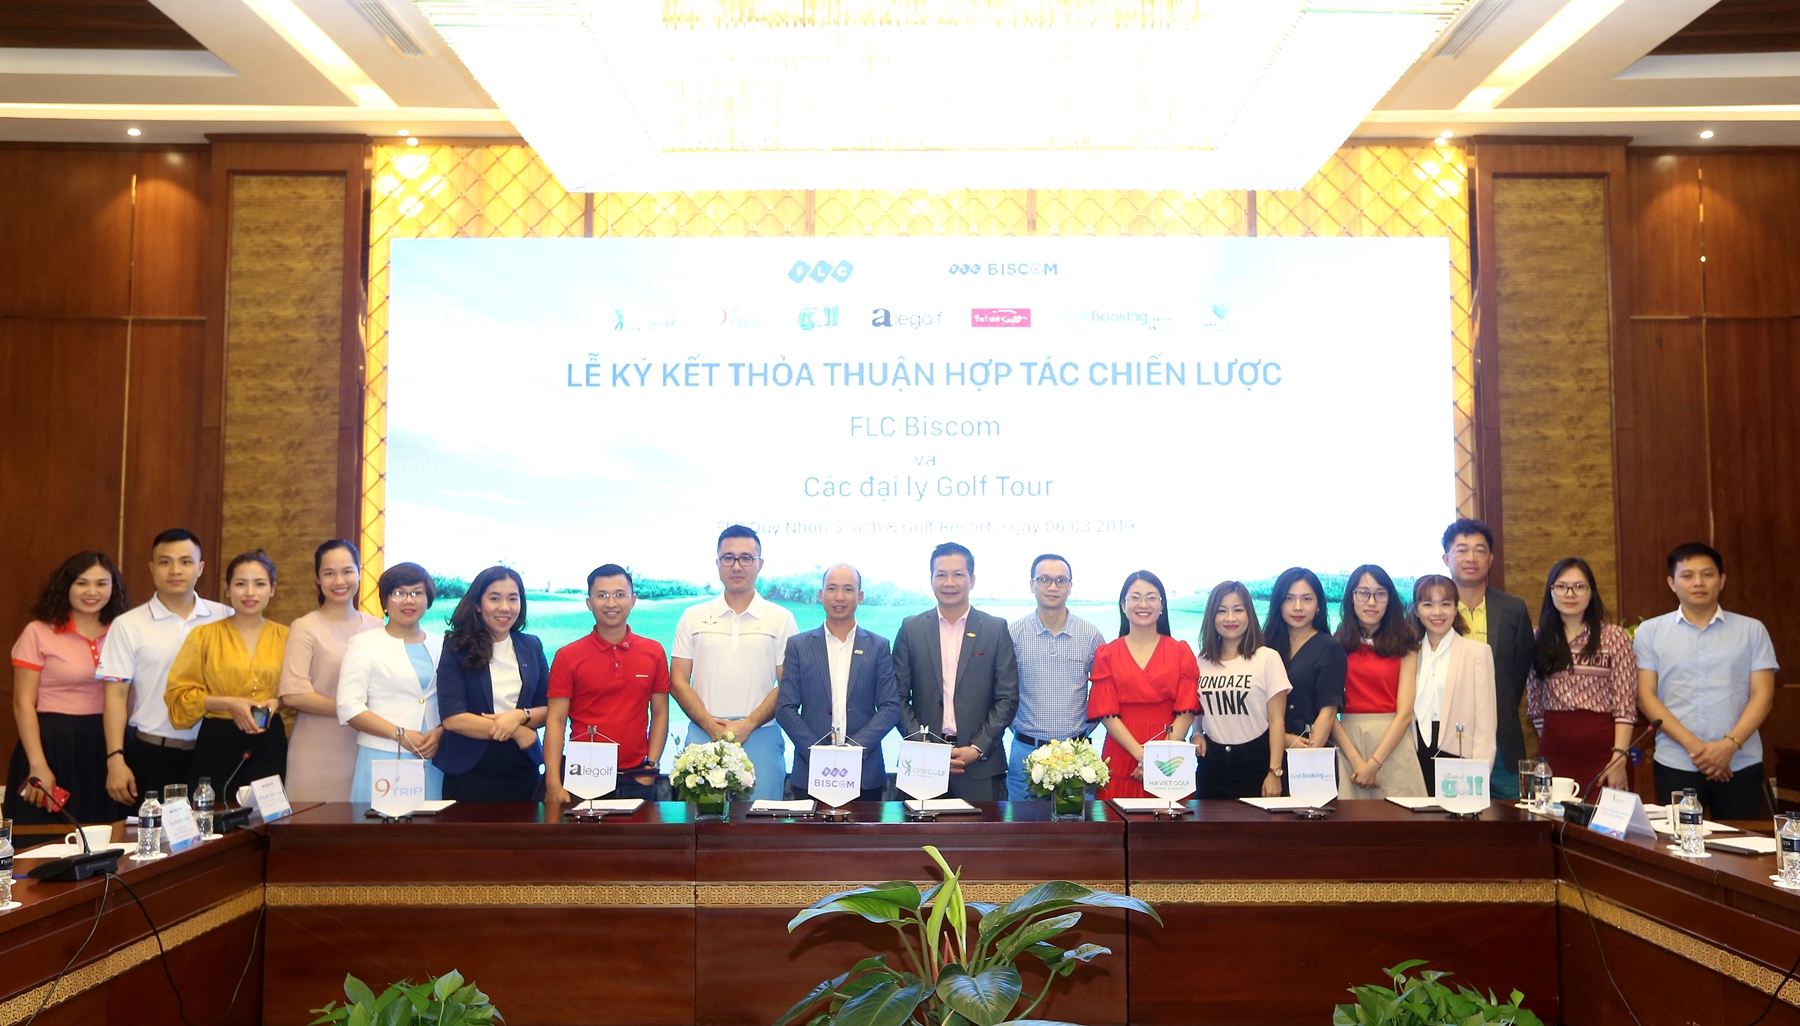 FLC Biscom 'bắt tay' với 10 đại lý golf tour lớn nhất Việt Nam